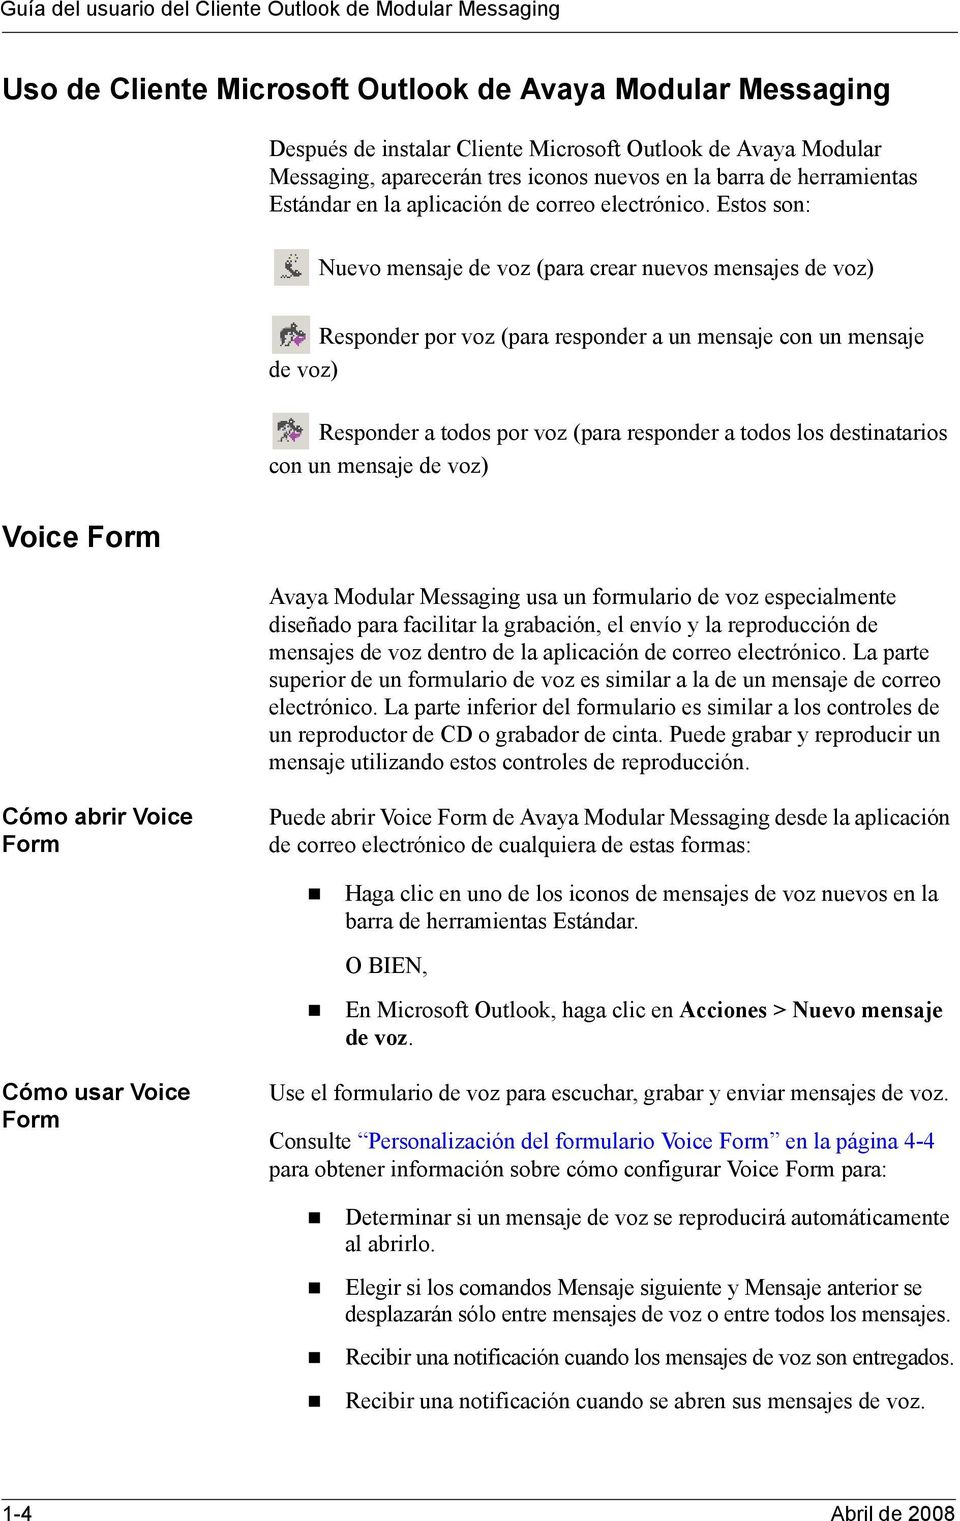 Estos son: Nuevo mensaje de voz (para crear nuevos mensajes de voz) Responder por voz (para responder a un mensaje con un mensaje de voz) Responder a todos por voz (para responder a todos los